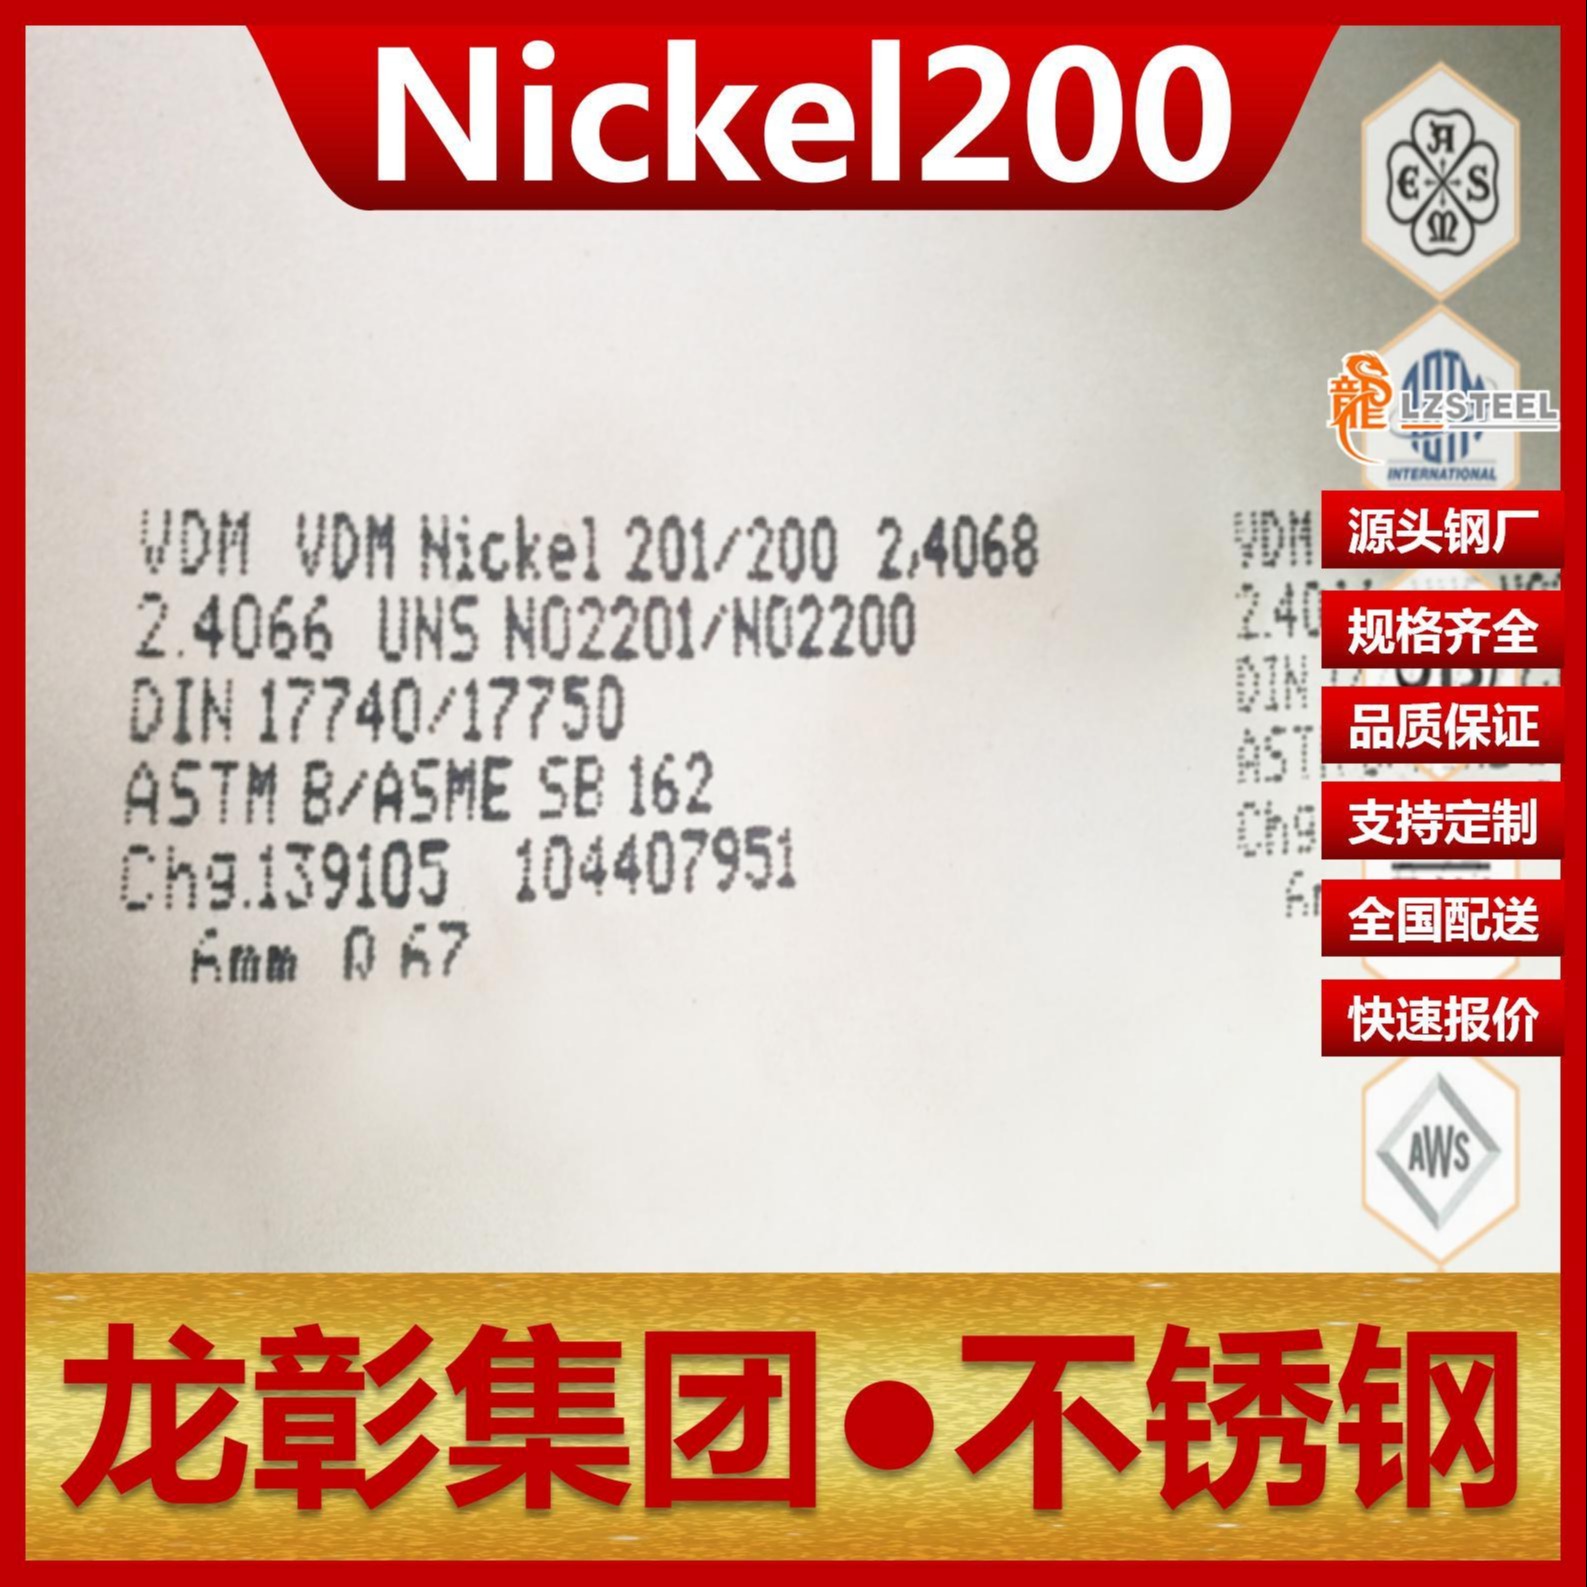 纯镍尼可尔合金Nickel200不锈钢现货批零 龙彰集团Nickel200不锈钢板圆钢棒